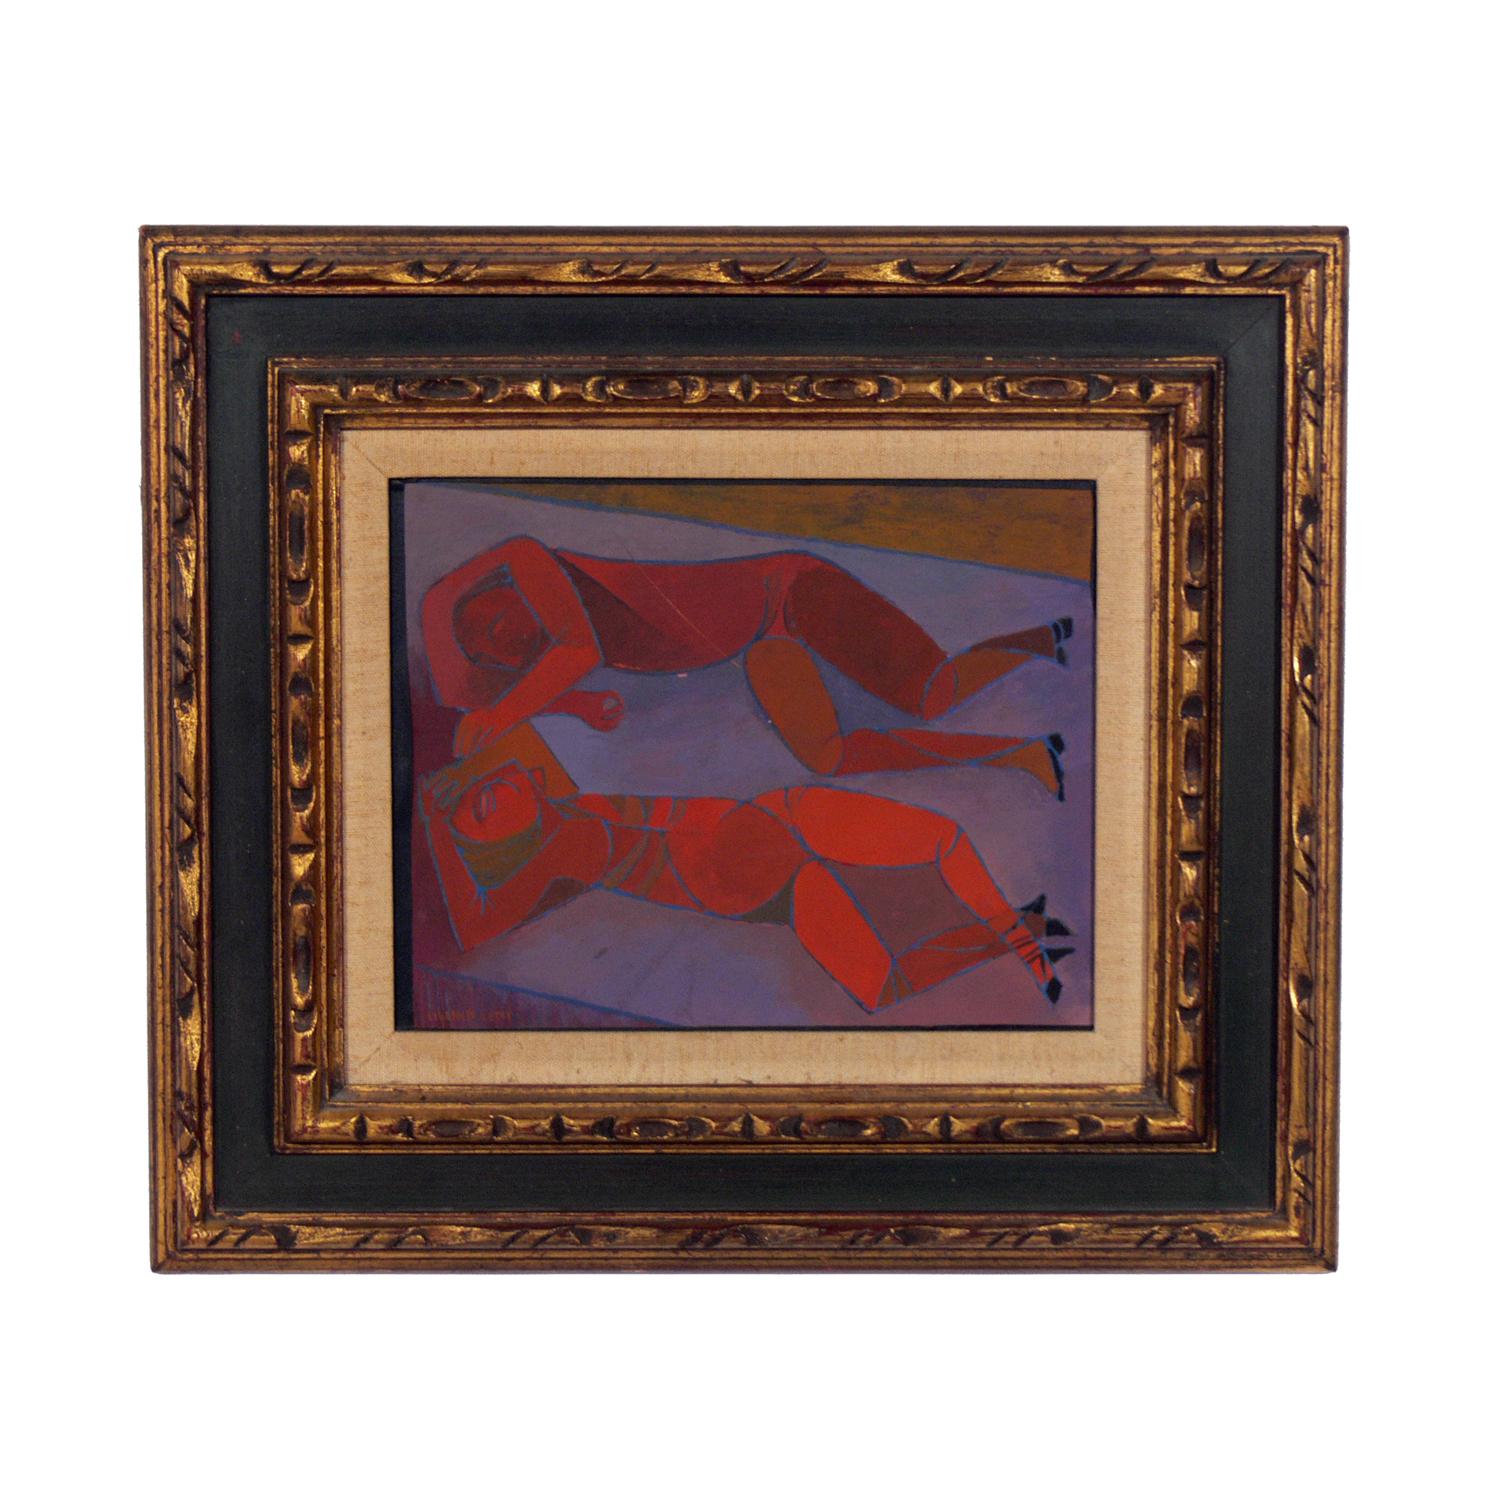 Sélection d'art moderniste, vers les années 1950. De gauche à droite, ce sont :
1) VENDU Peinture de nus modernistes par Lillian Lent, américaine, vers les années 1950. Elle est exécutée sur carton dans son cadre d'origine. Il mesure 14,5